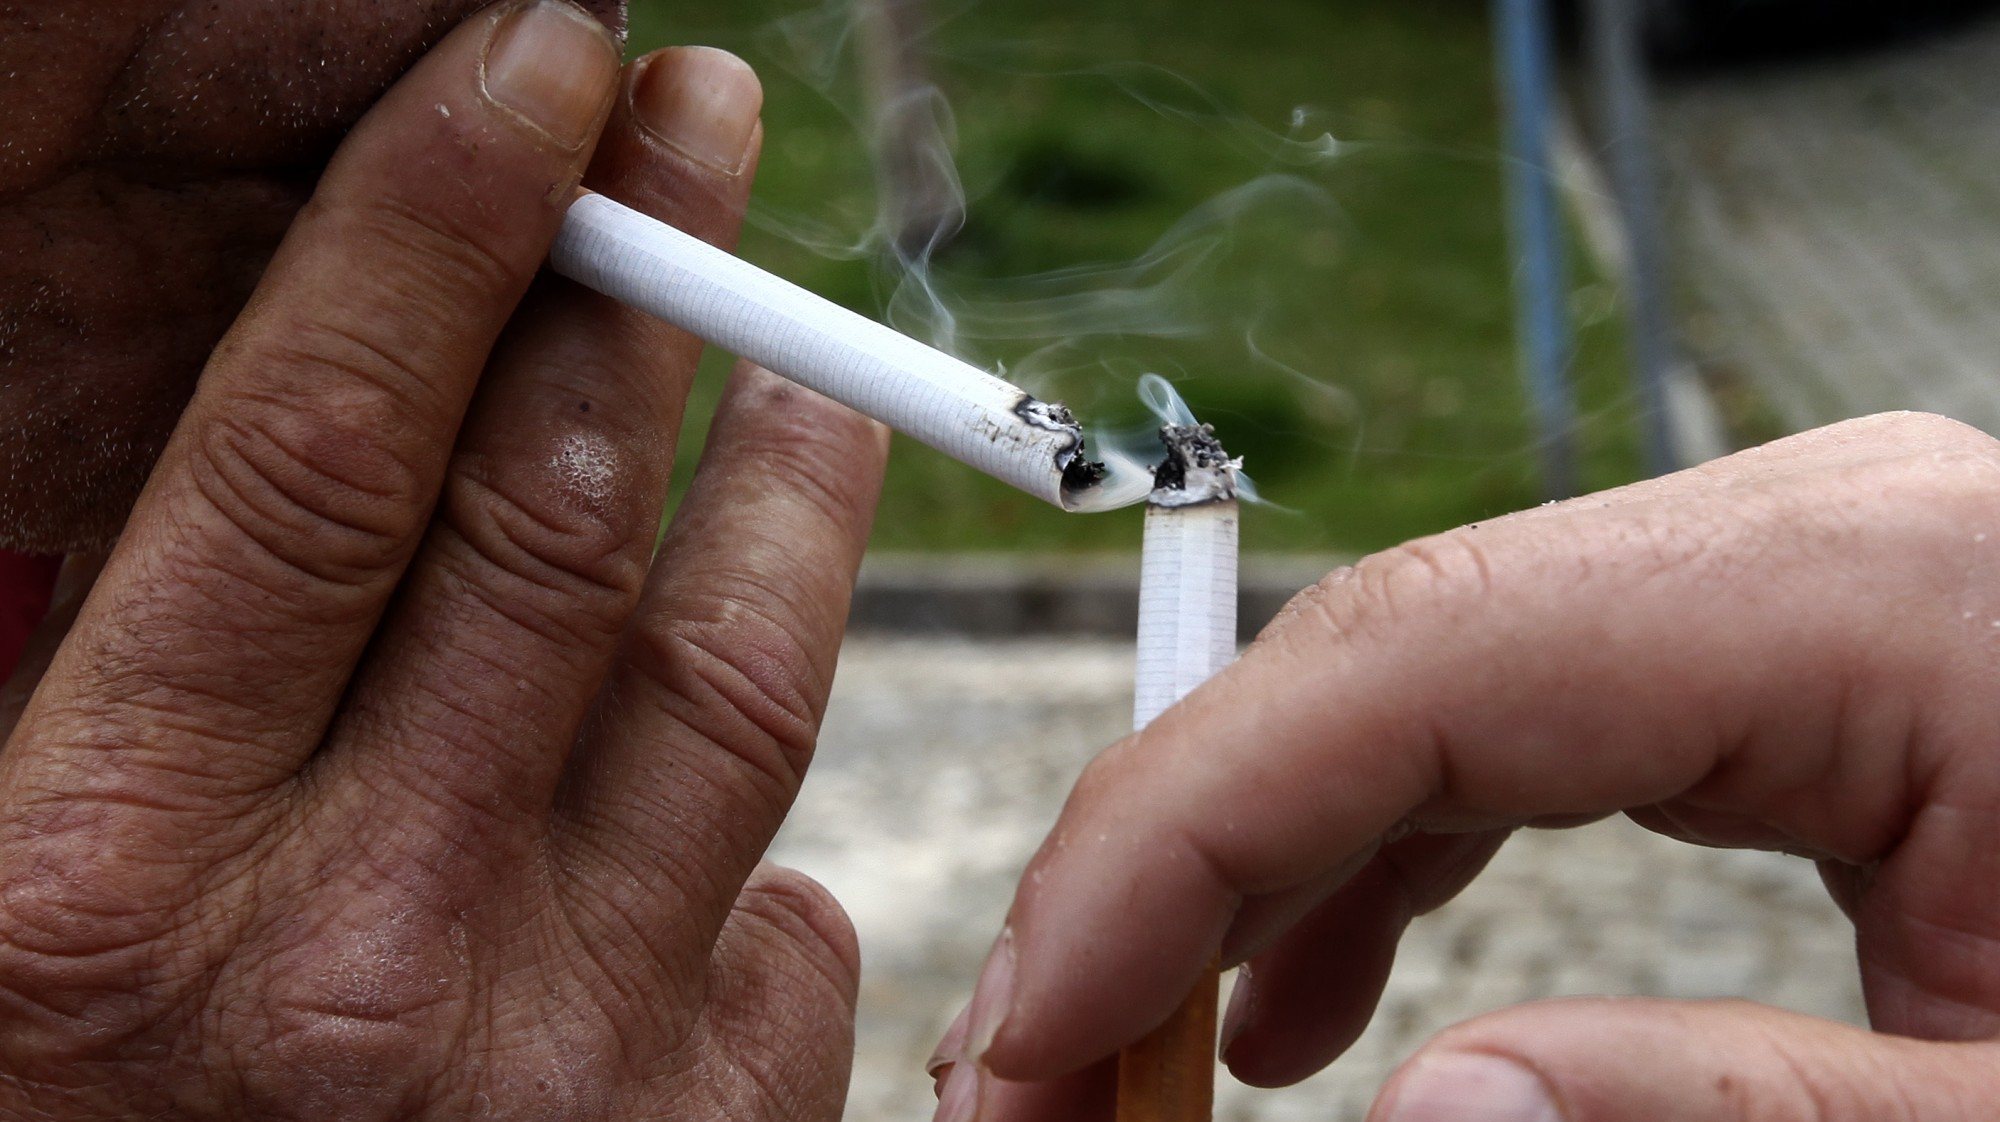 eliminação definitiva do fumo em áreas fechadas só entra em vigor a partir de 2030